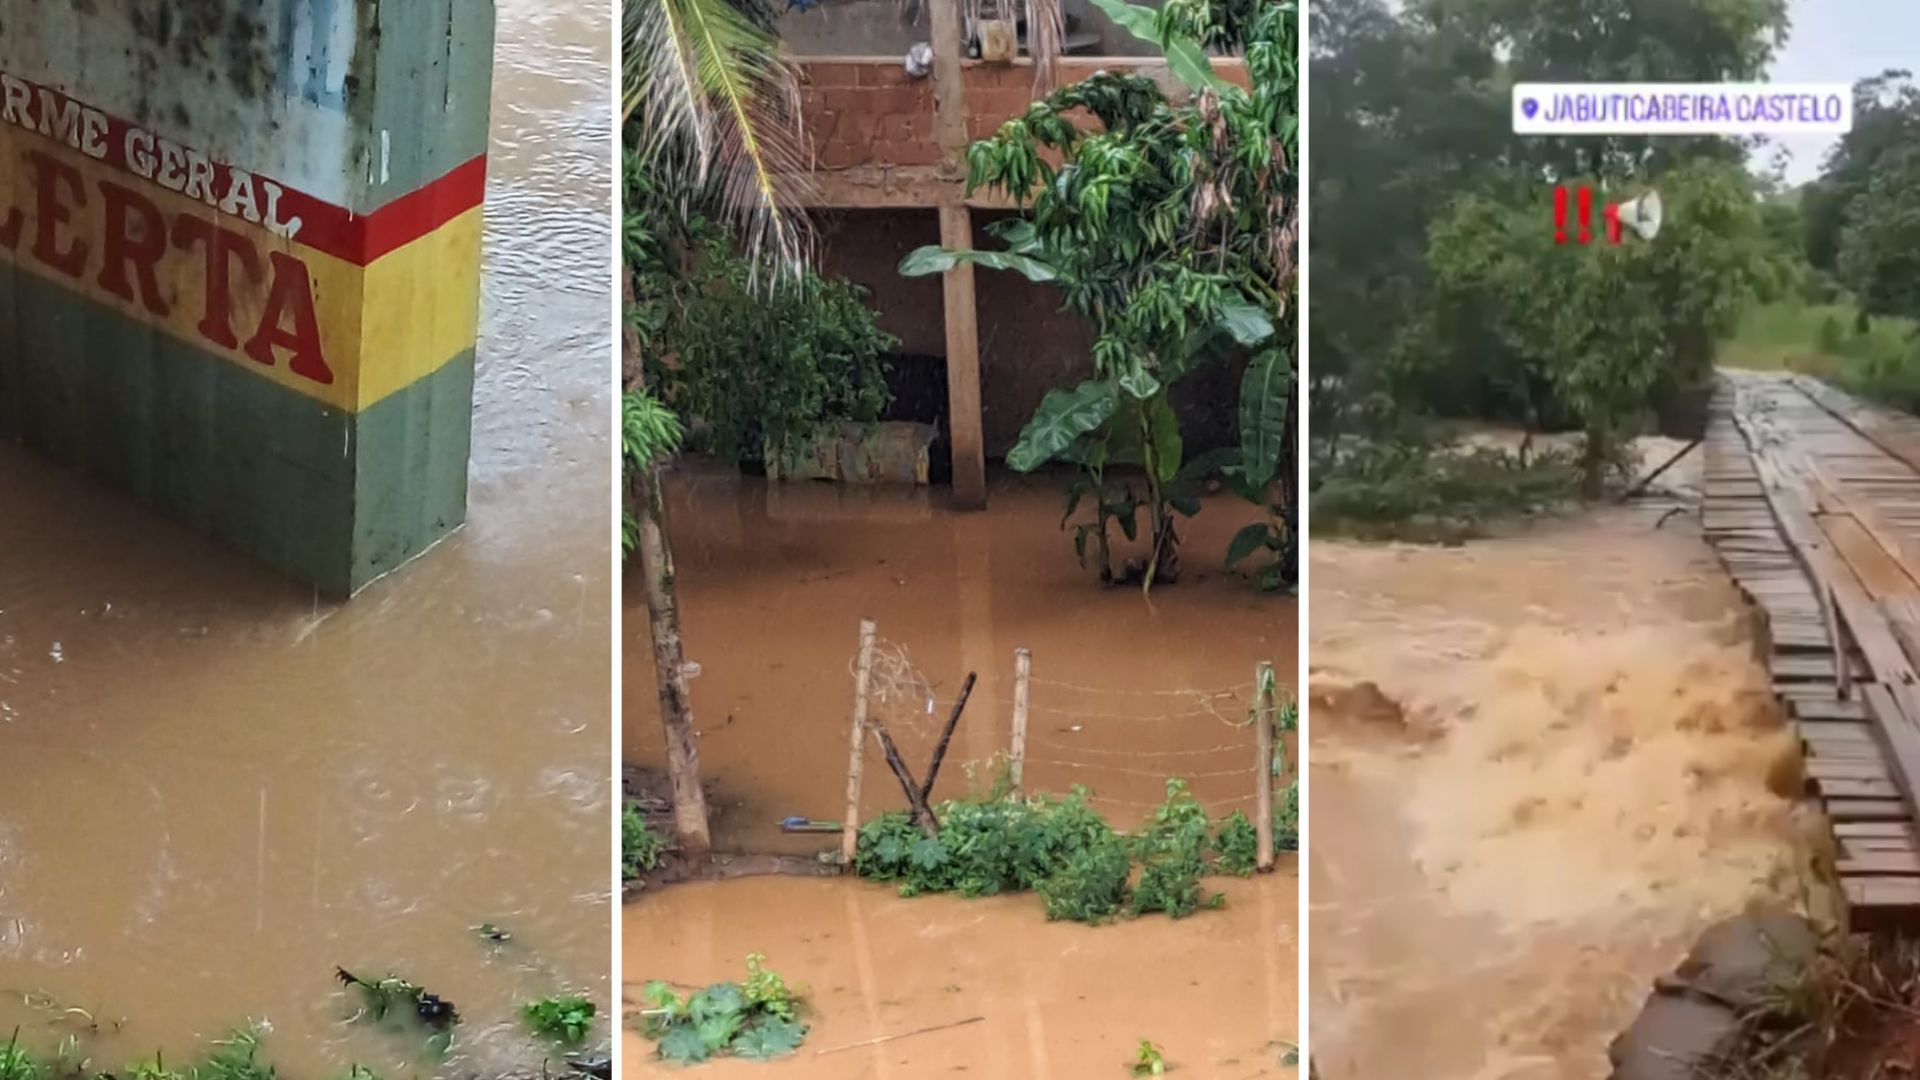 Segundo prefeitura, município está em estado de atenção, mas não há risco de inundações com as condições atuais, porém ainda existe a previsão de chuvas na região